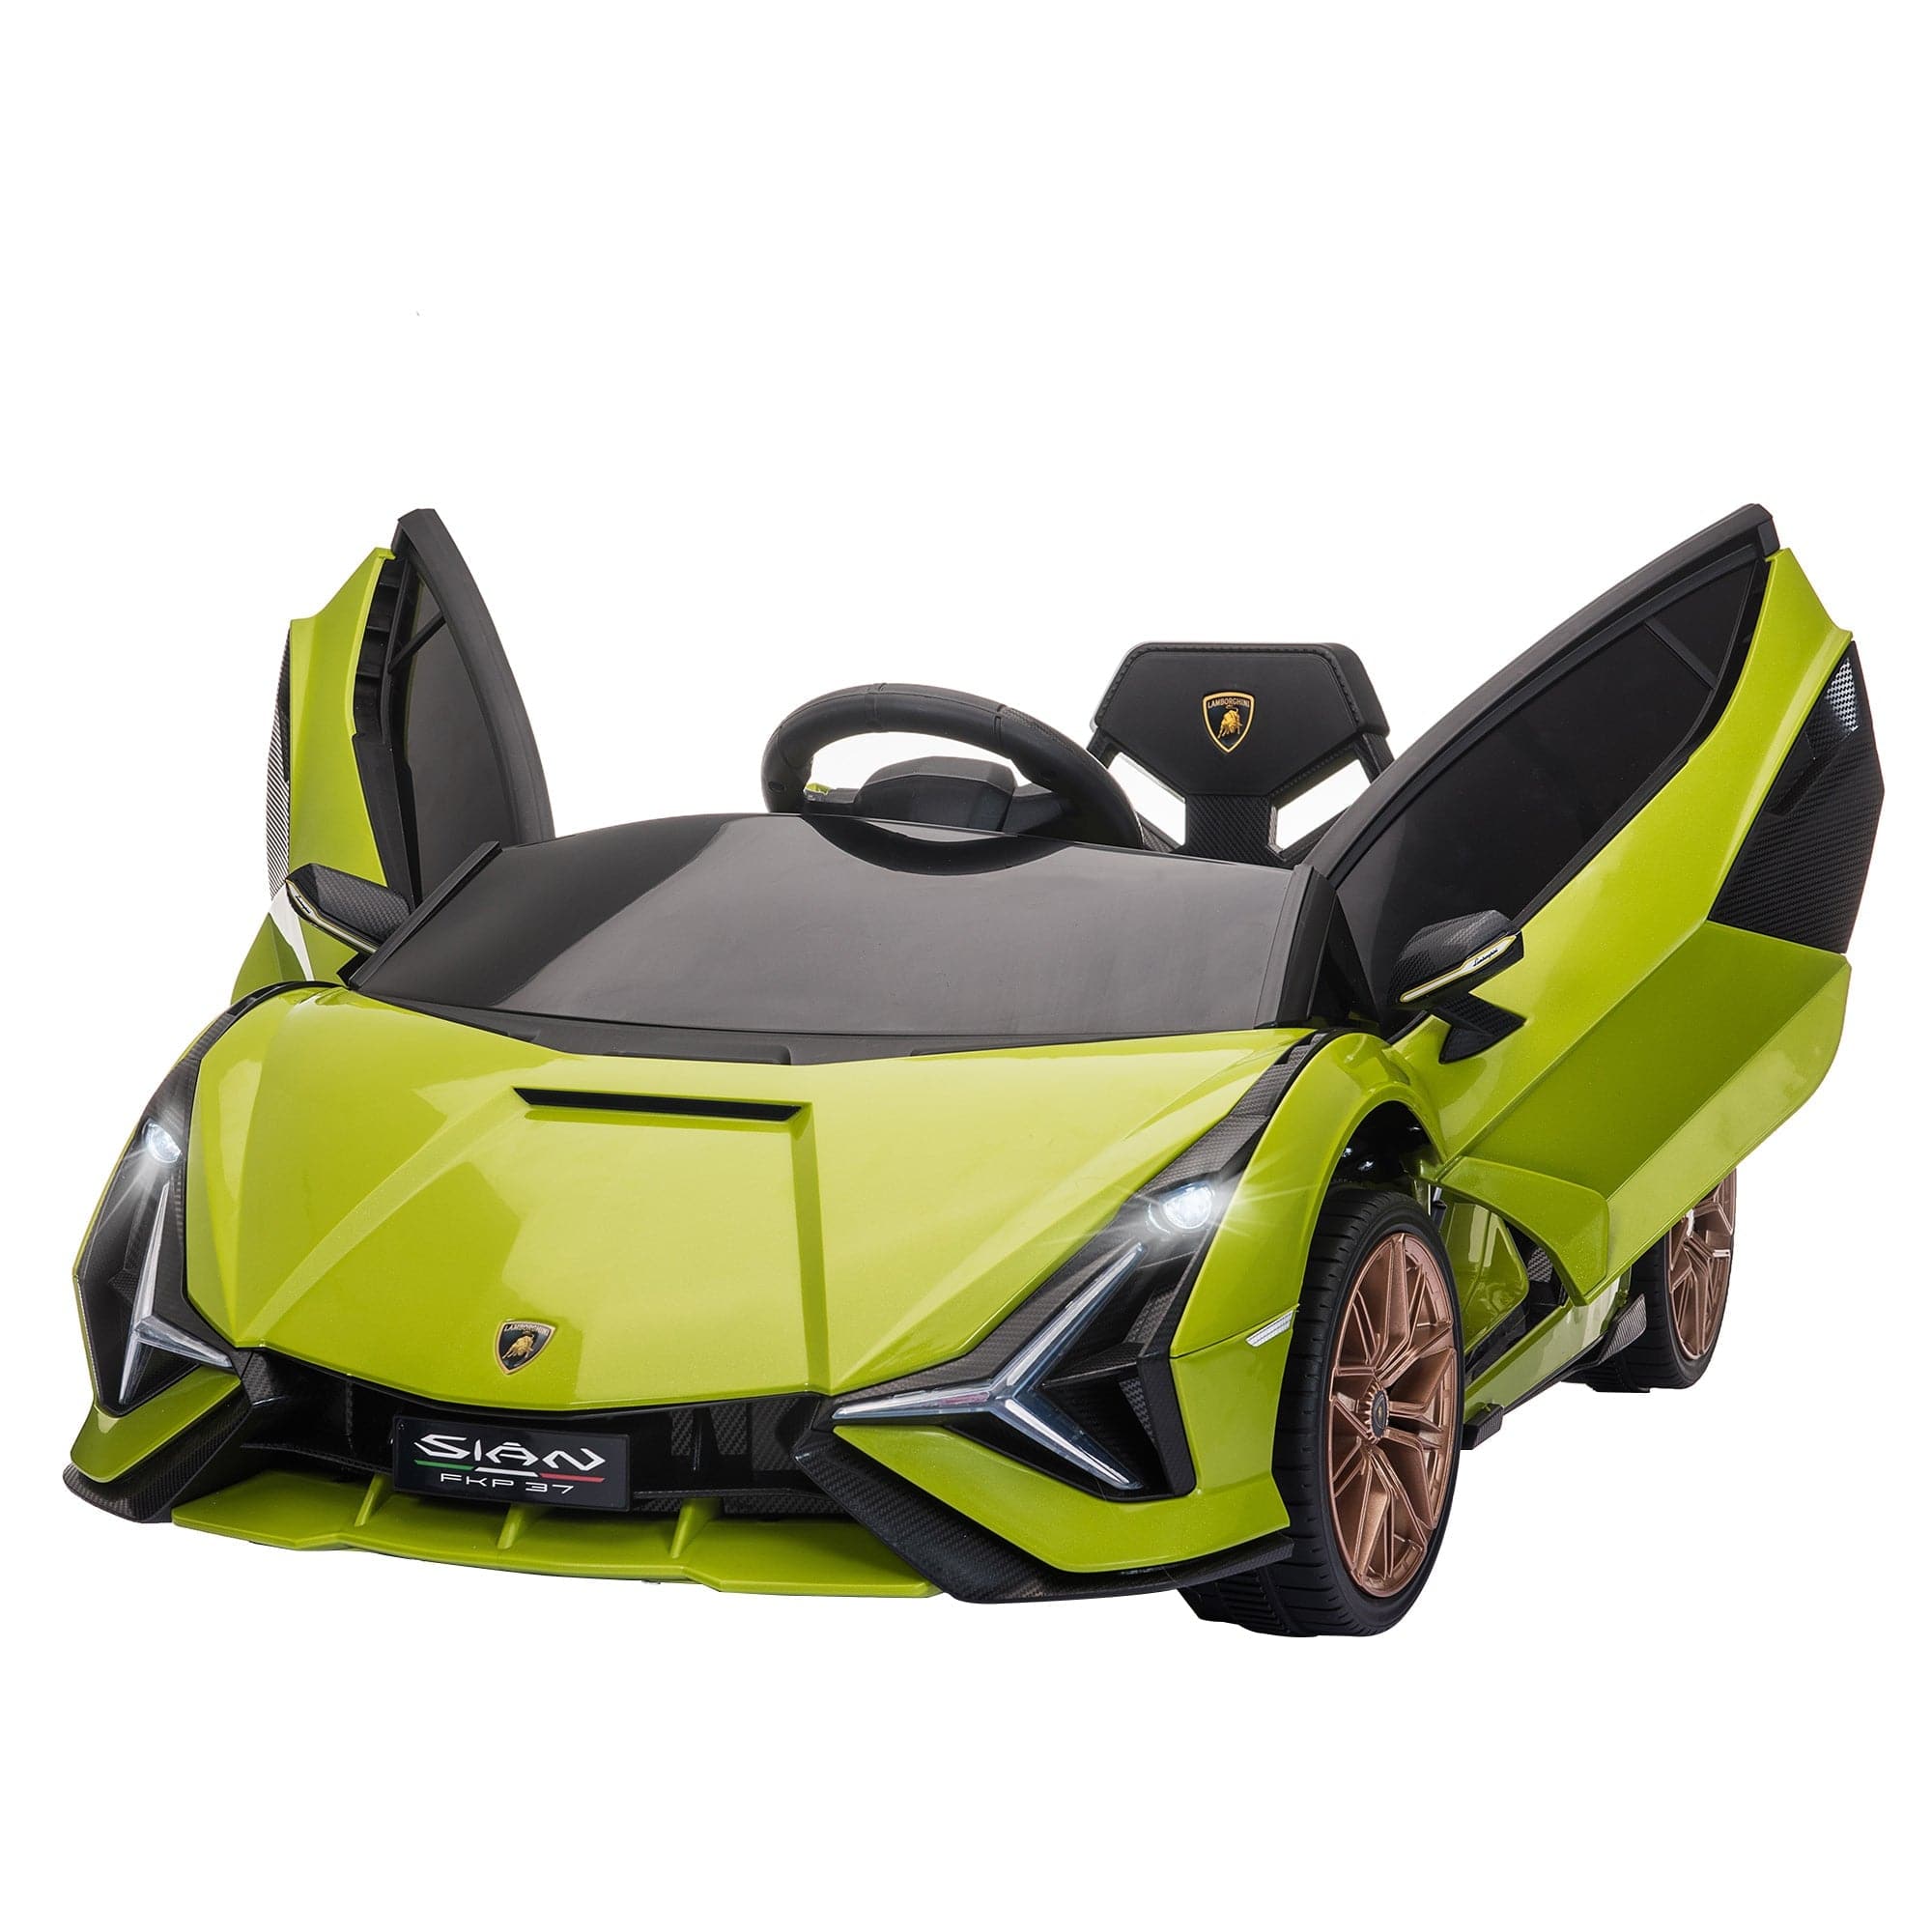 Maplin Plus Licensed Lamborghini 12V Kids Electric Ride On Car with Remote Control (Green)